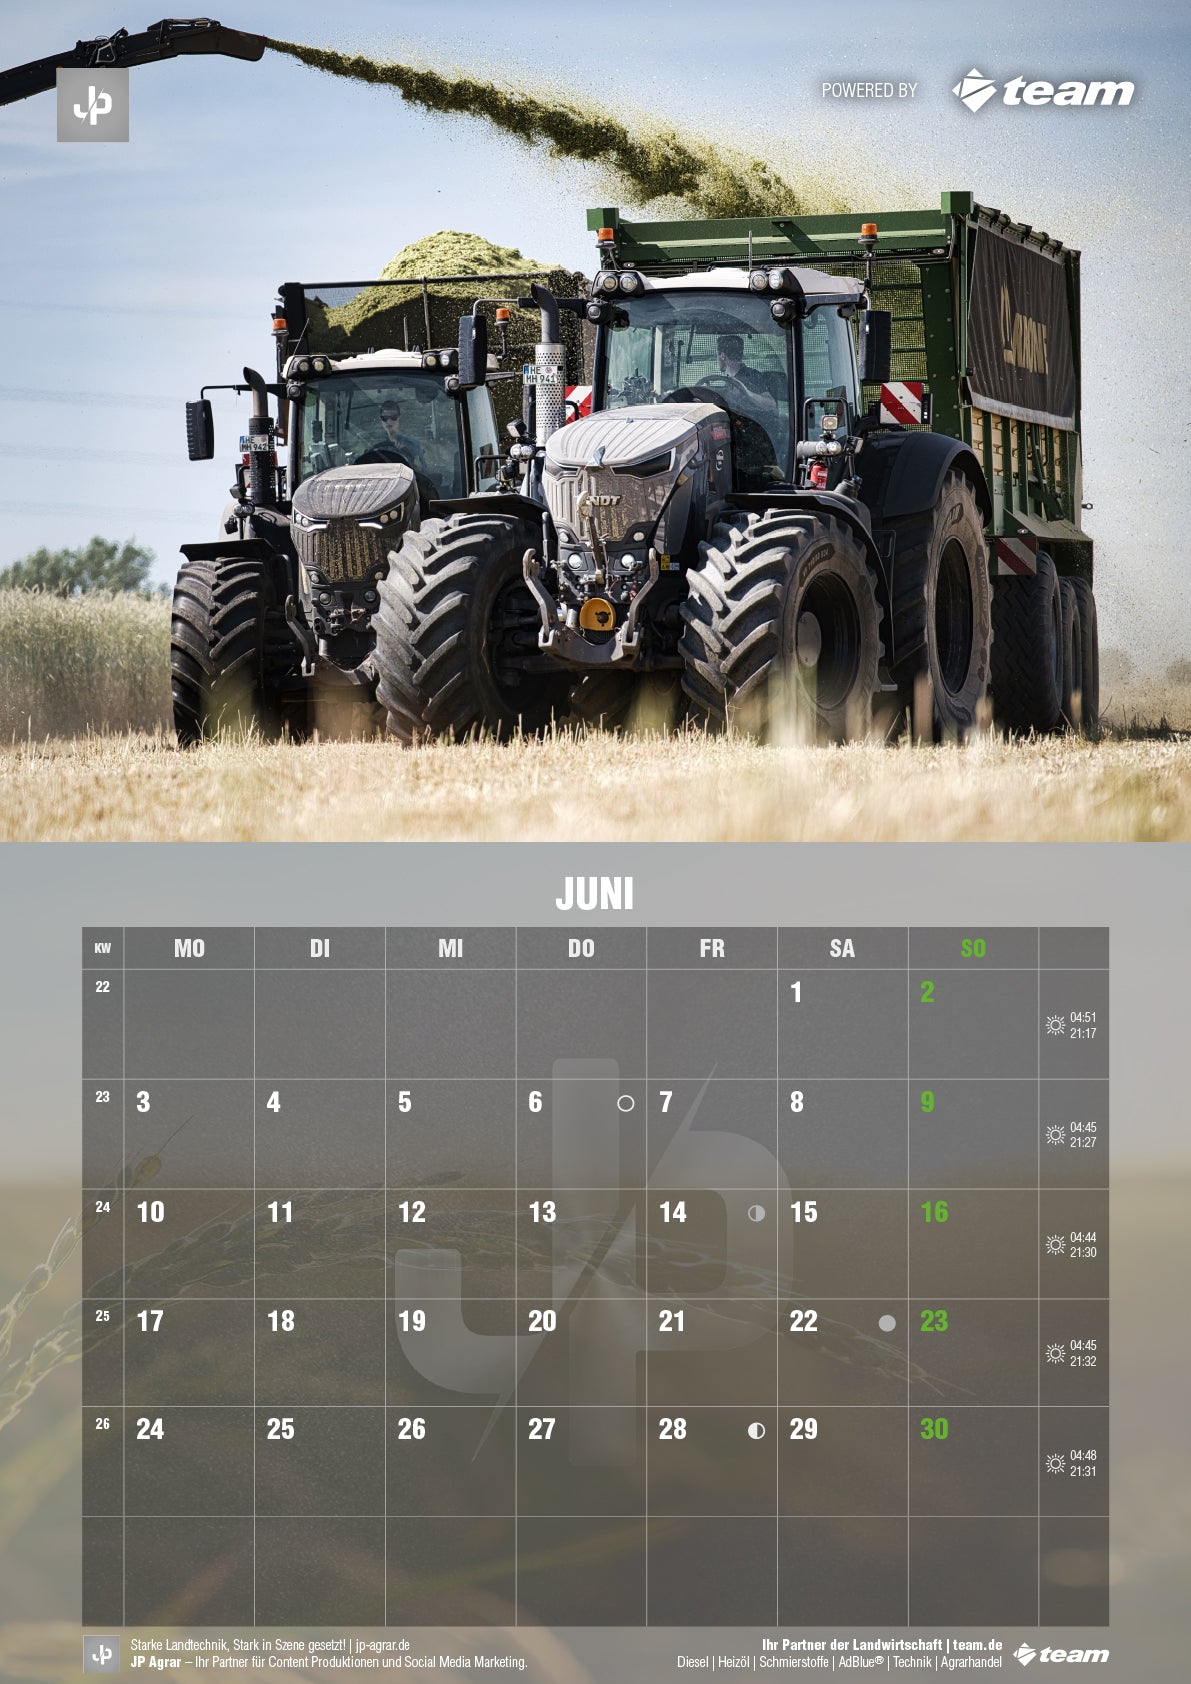 Landtechnik Kalender 2024 JP Agrar - Vorbestellung